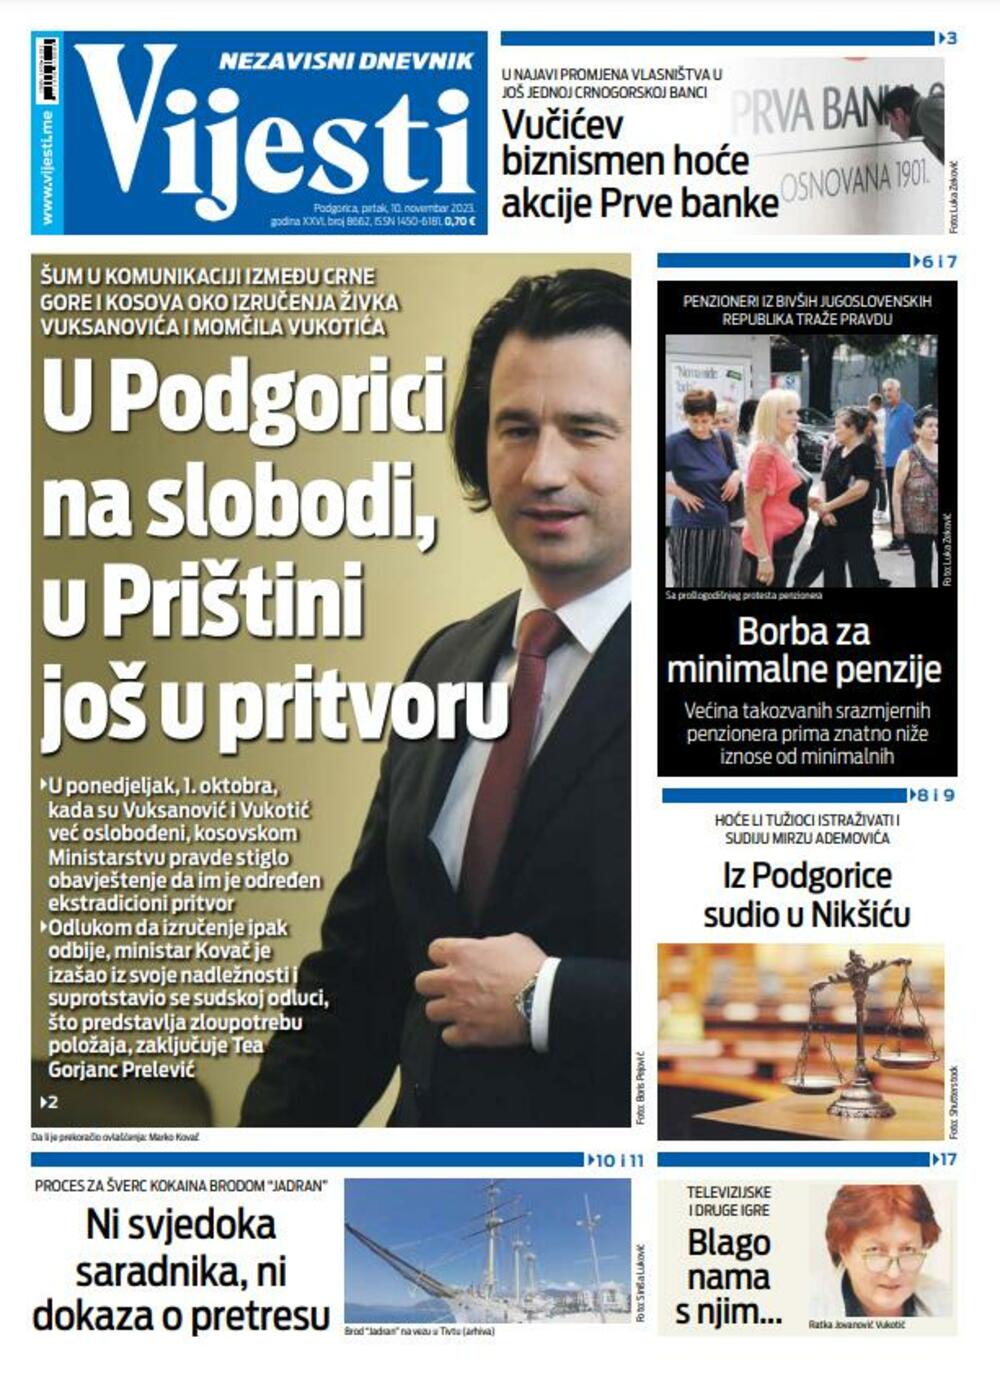 Naslovna strana "Vijesti" za 10. novembar 2023., Foto: Vijesti